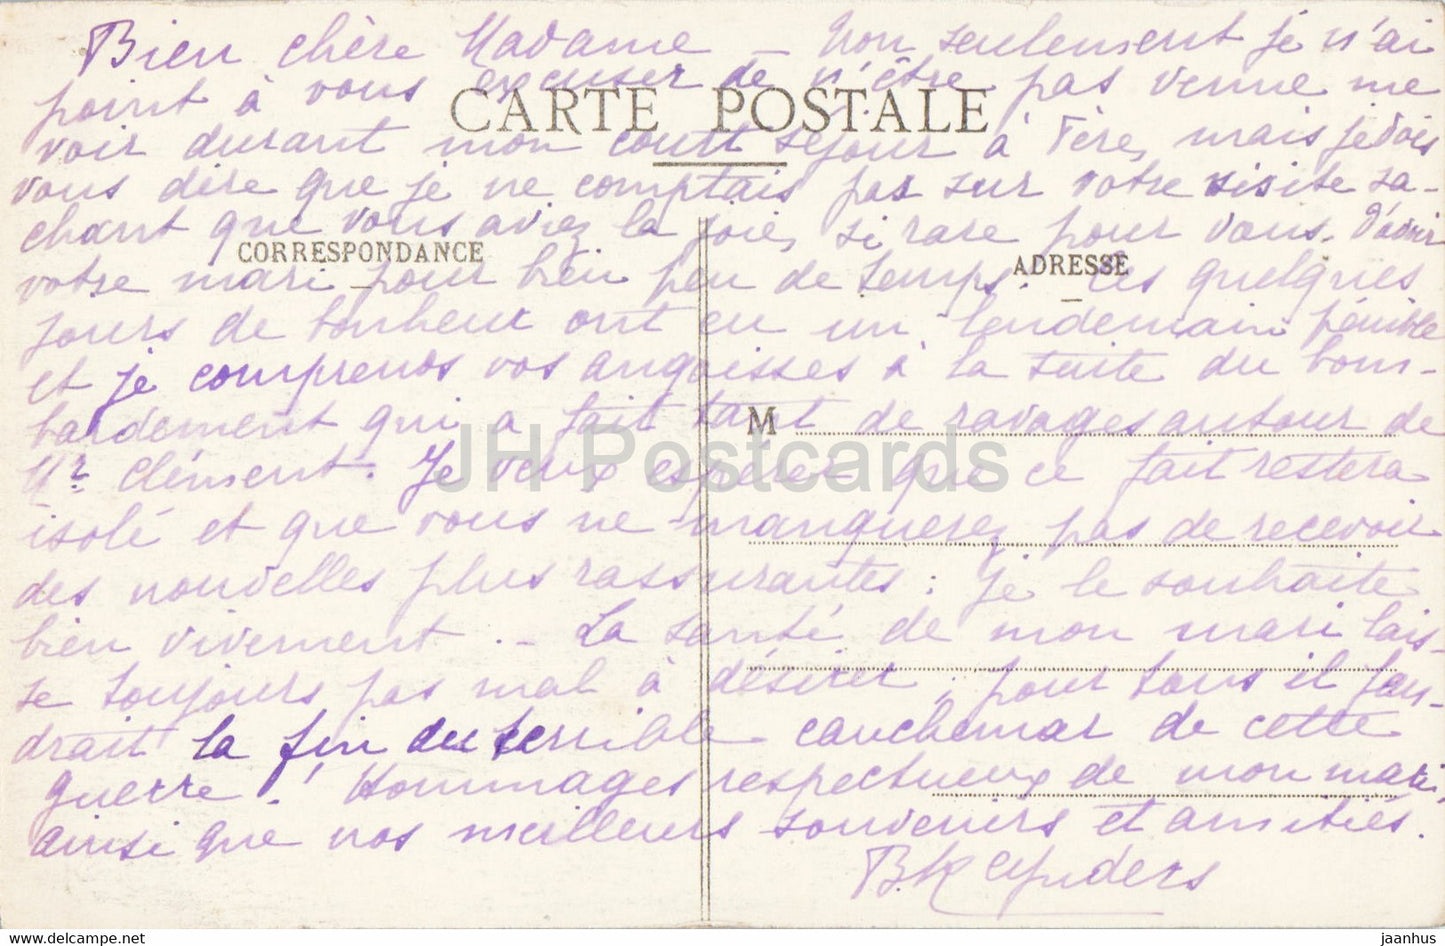 Dijon - Jacquemart Horloge de l'Eglise Notre Dame - old postcard - 1916 - France - used